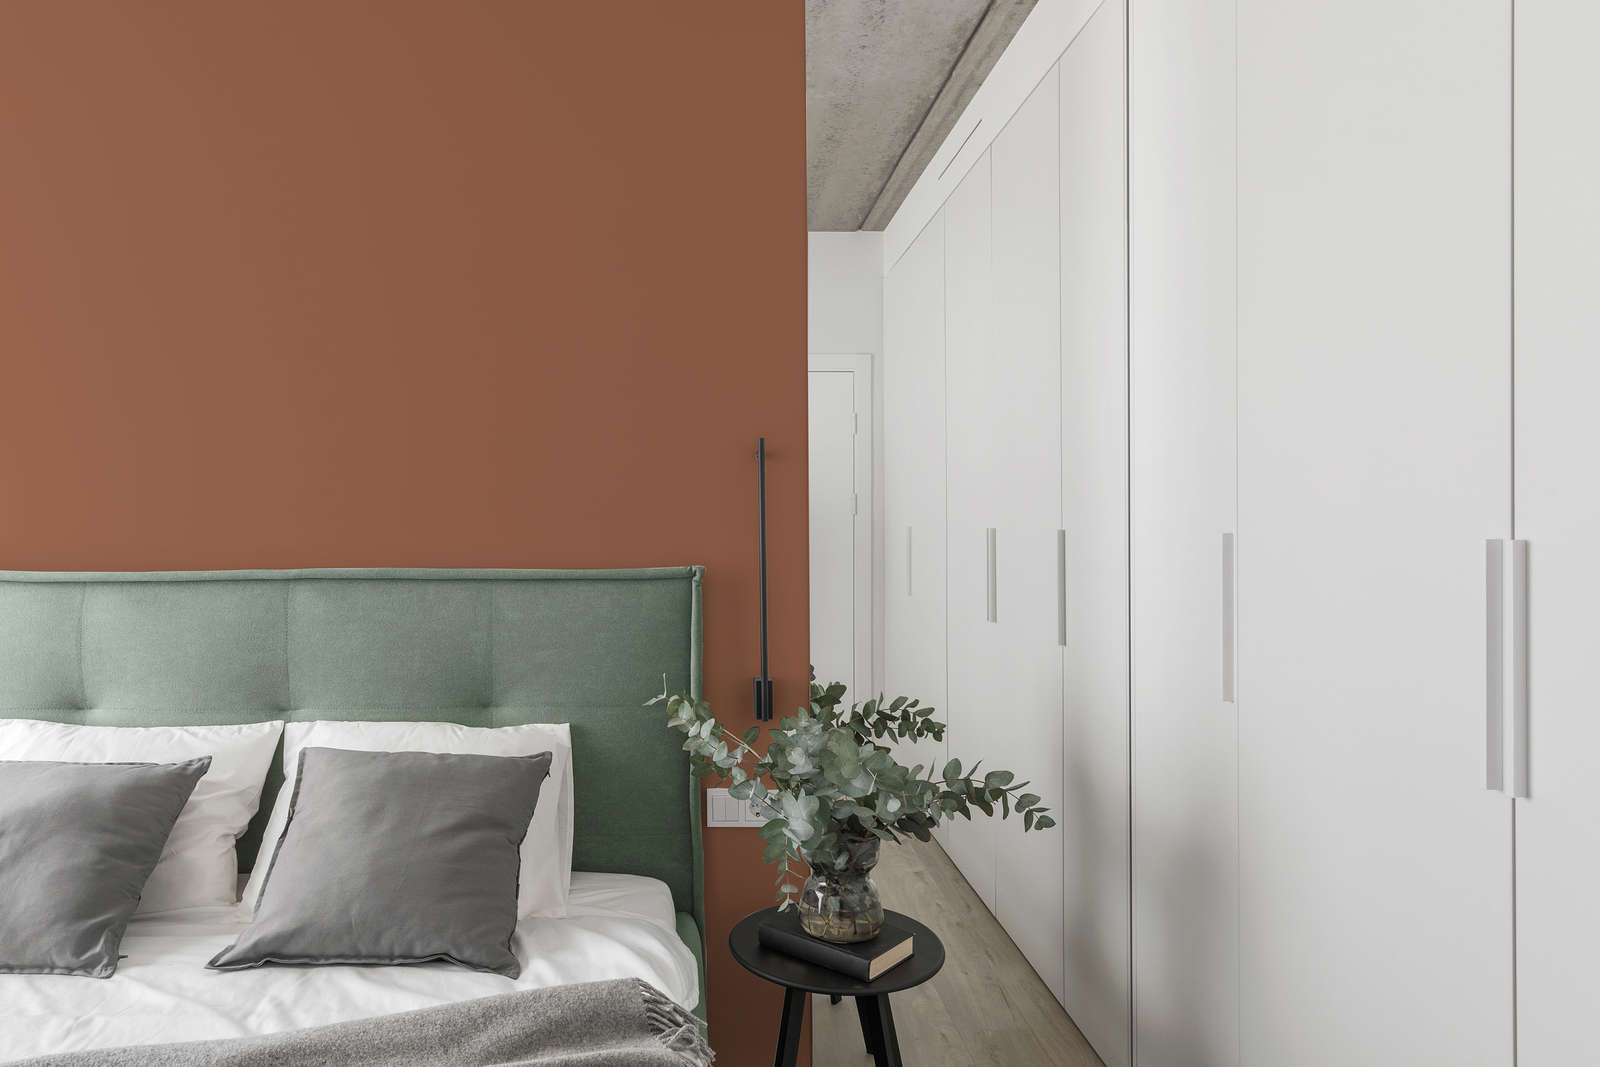             Premium Wandfarbe besänftigendes Terracotta »Pretty Peach« NW909 – 1 Liter
        